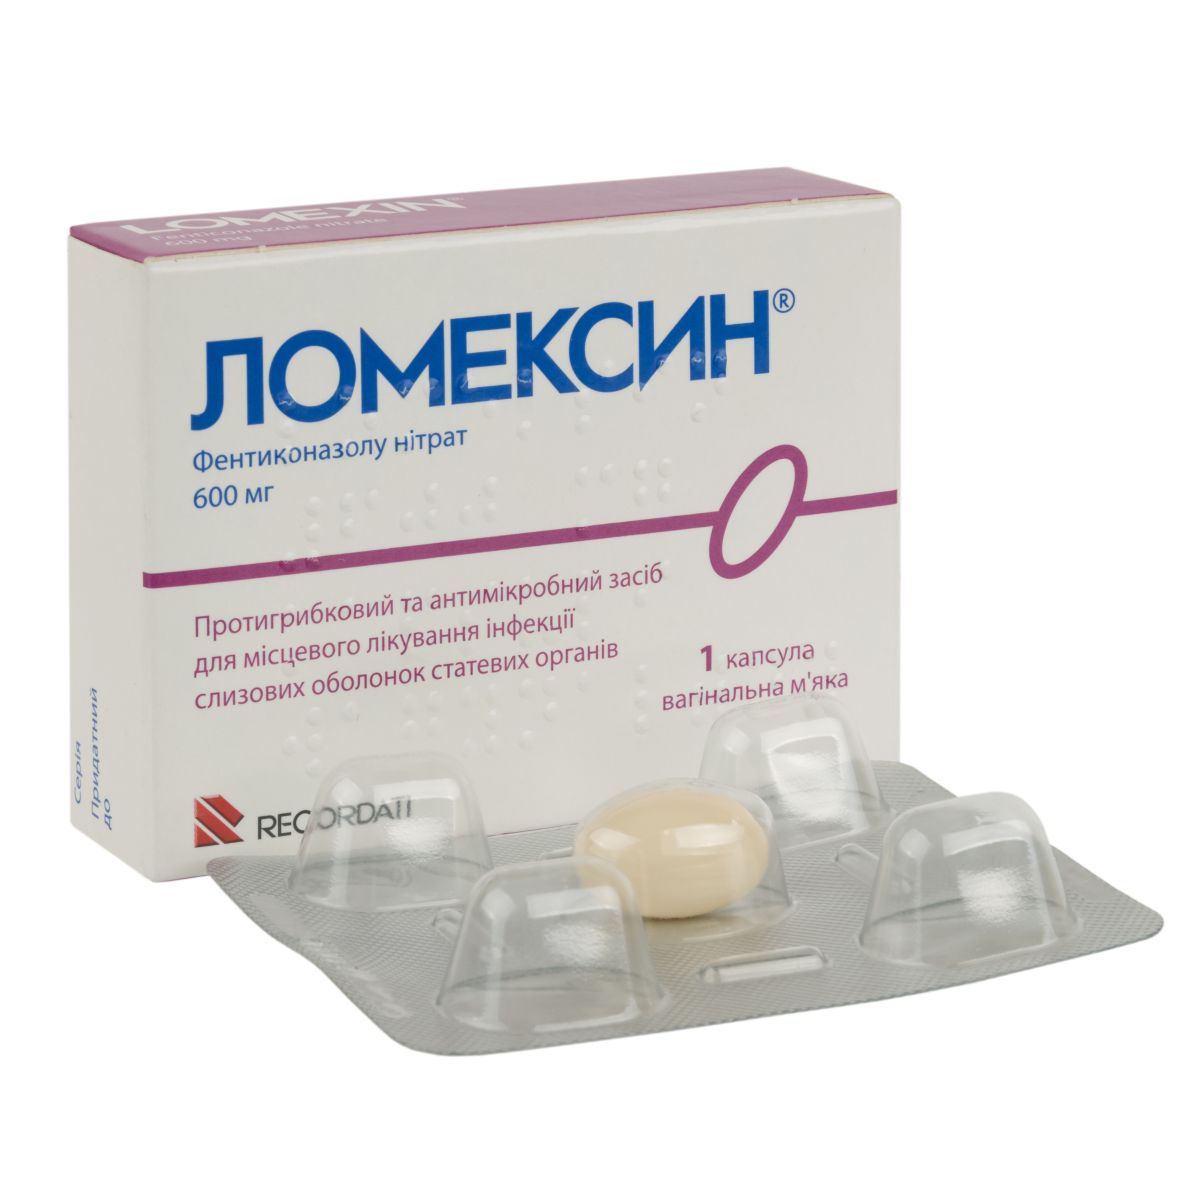 Ломексин капсулы вагинальные мягкие мг блистер №1 - в наличии: + аптек Киев Львов